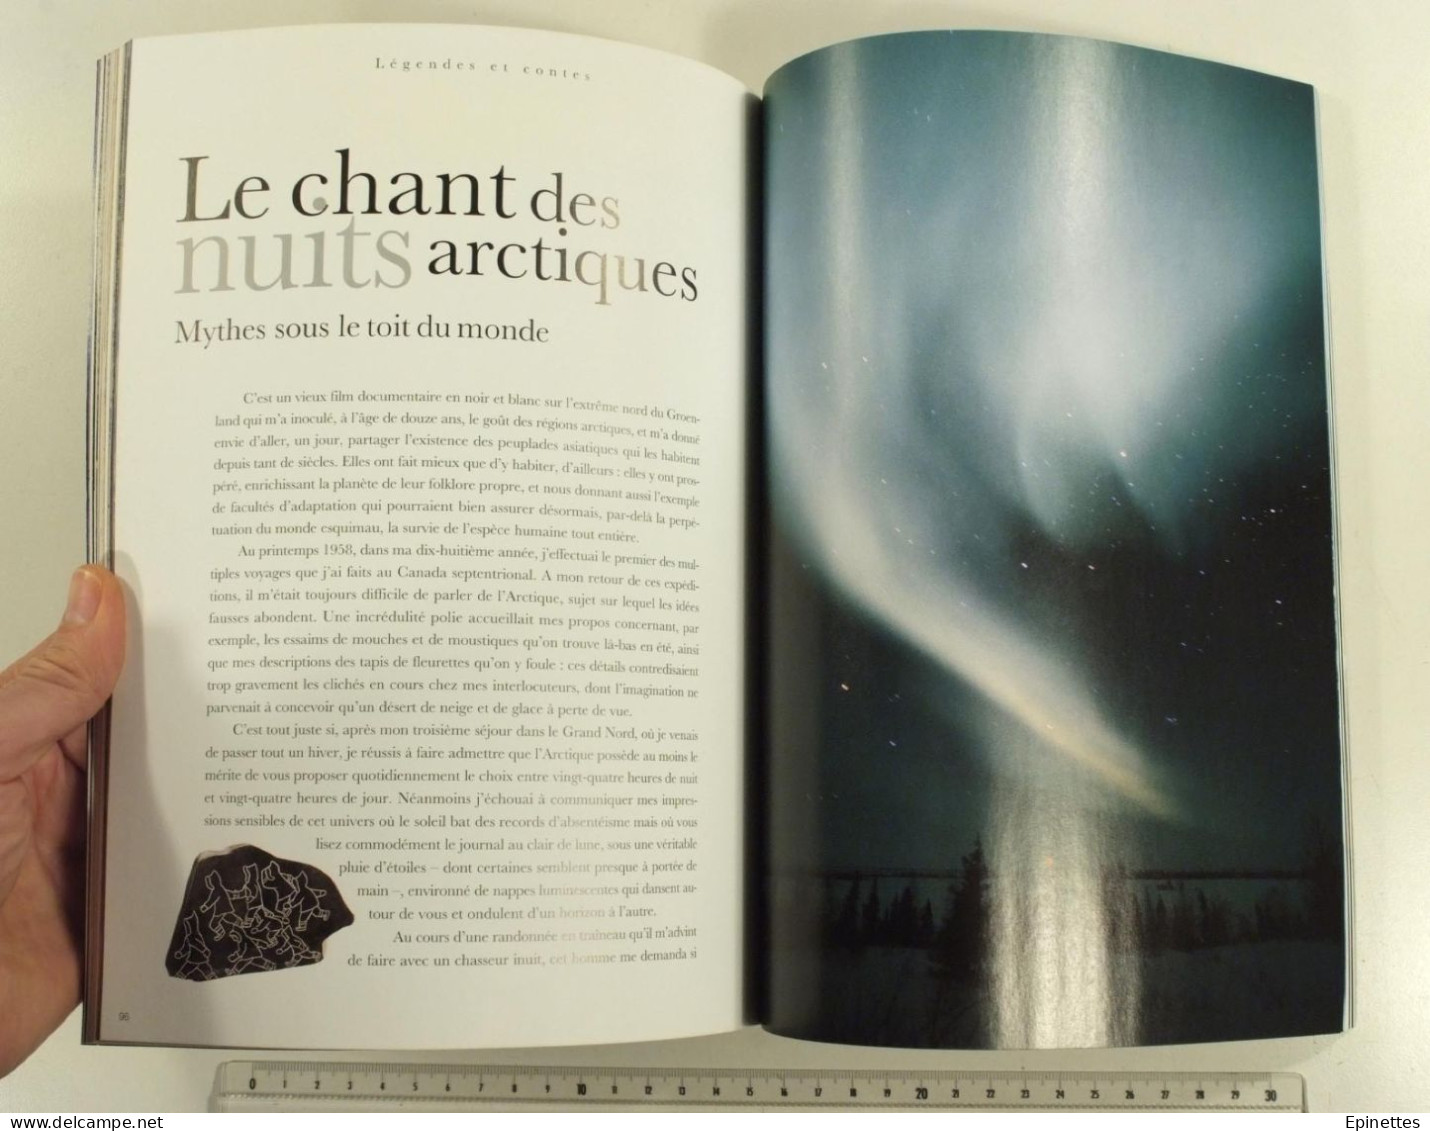 Lot 2 n°s Le Monde d'Hermès, n° 34, 1999 vol. 1 et n° 39, automne-hiver 2001-2002